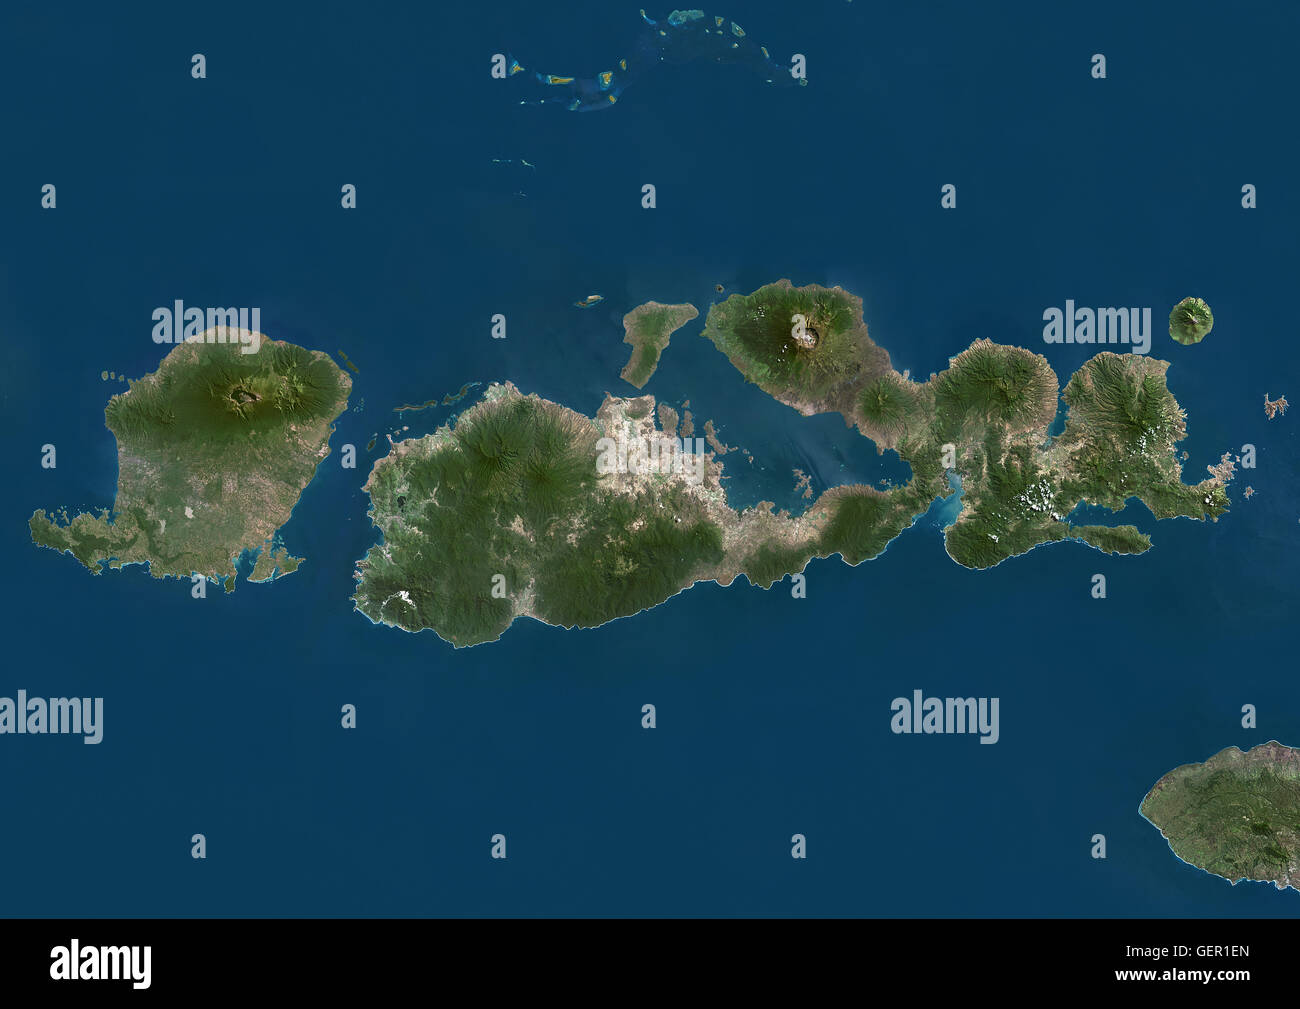 Satelliten-Ansicht von West Nusa Tenggara Provinz, Indonesien (mit Ländergrenzen und Maske). Das Bild zeigt die zwei größten Inseln in der Provinz im Westen befindlichen Lombok und die größere Insel Sumbawa im Osten. Dieses Bild wurde aus Daten erstellt. Stockfoto